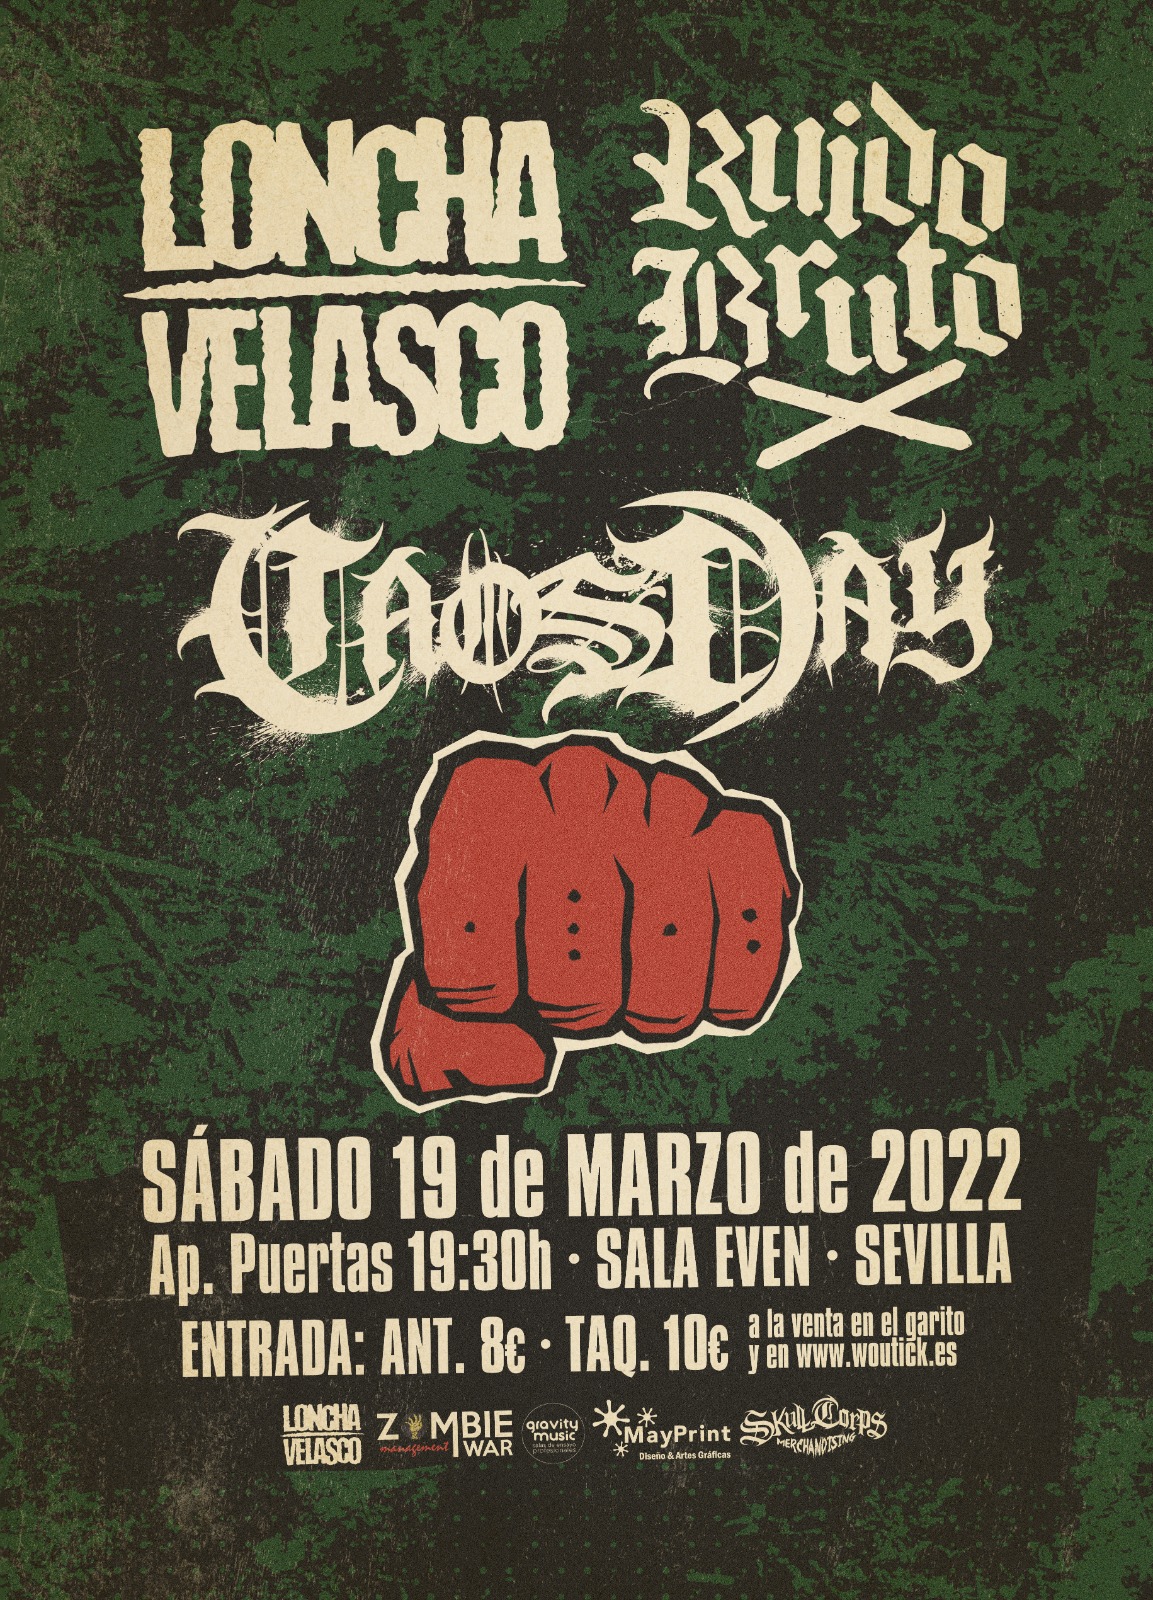 Loncha Velasco + Ruido Bruto + Caos Day el 19 de marzo en Sevilla